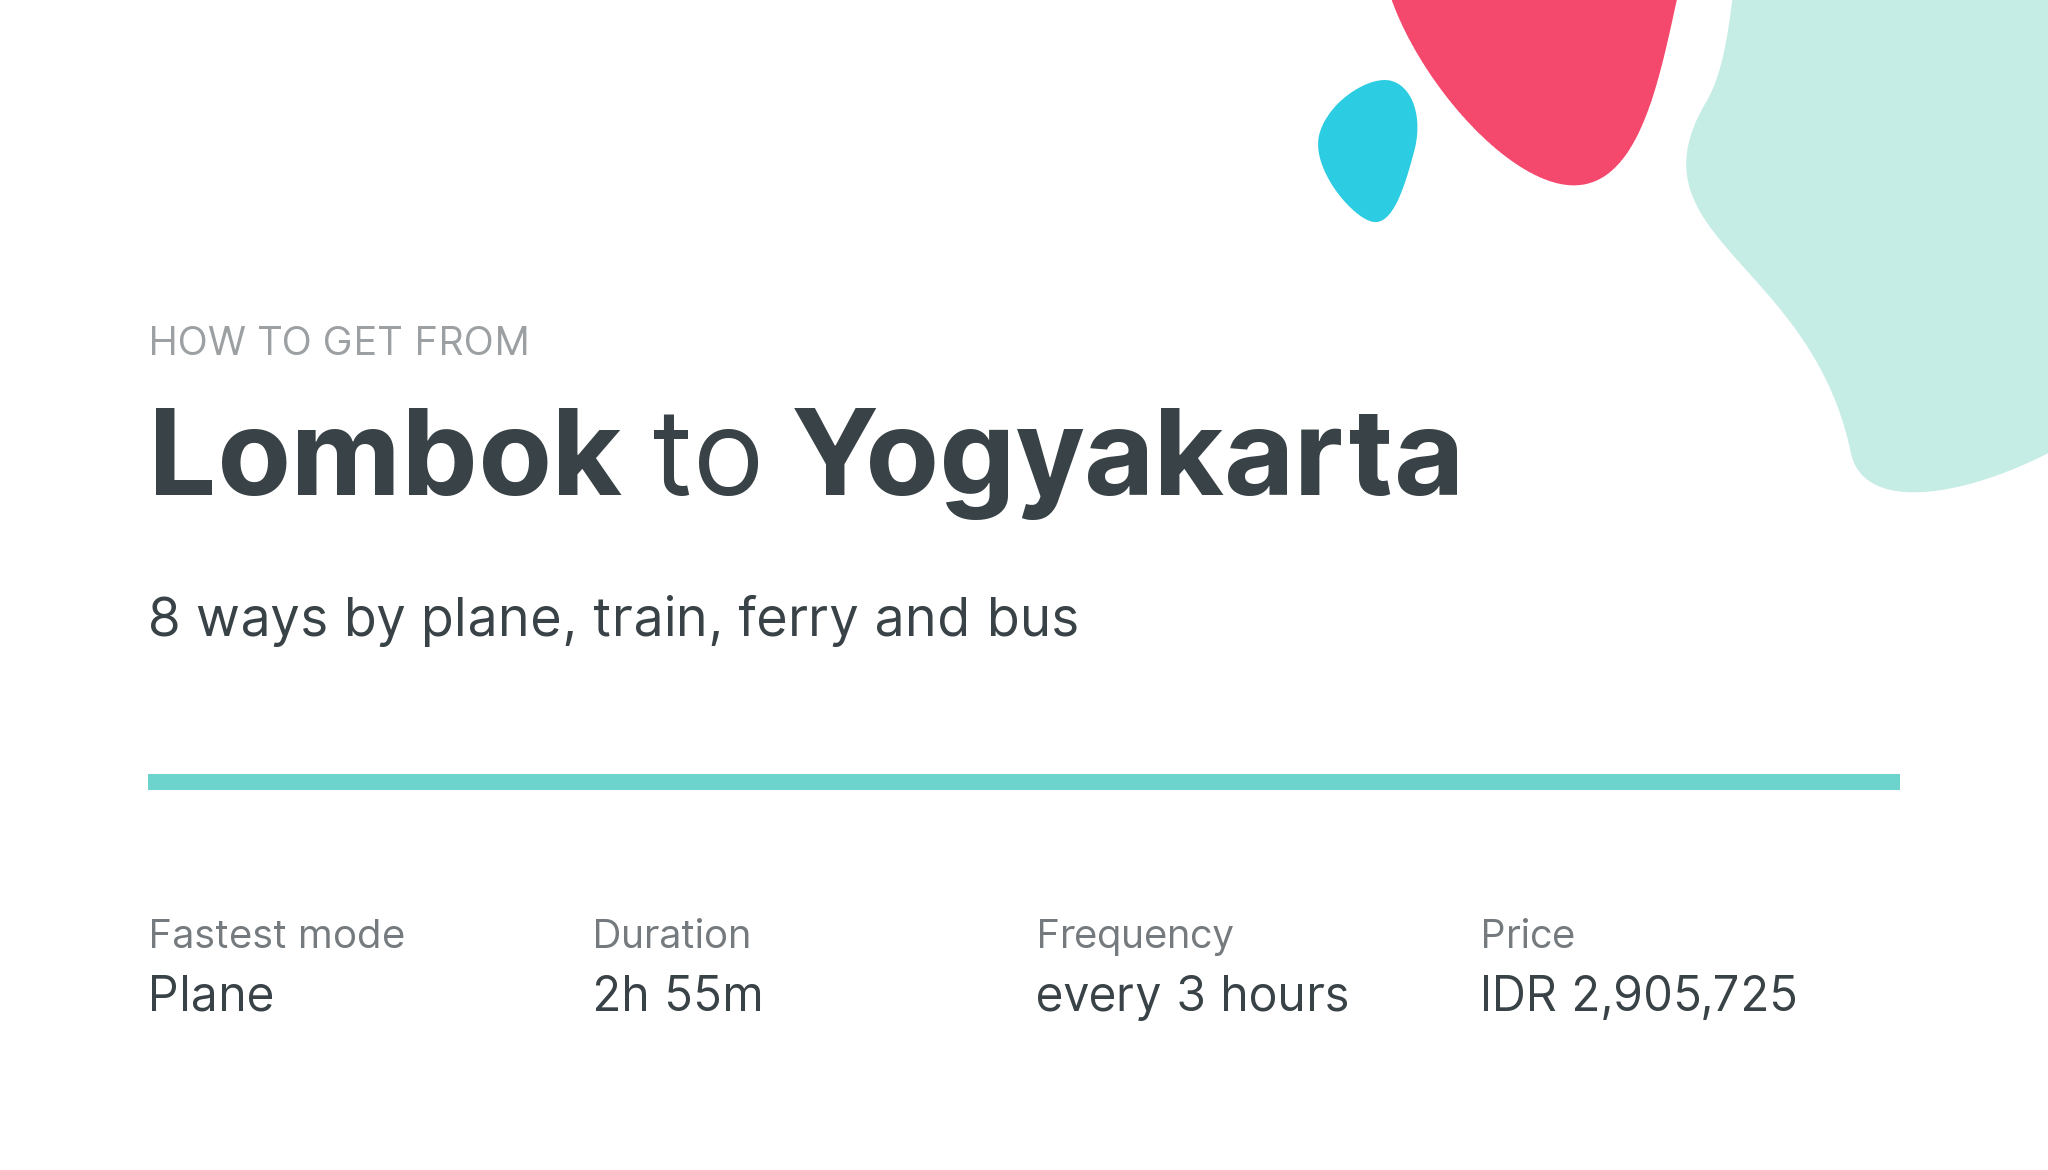 How do I get from Lombok to Yogyakarta